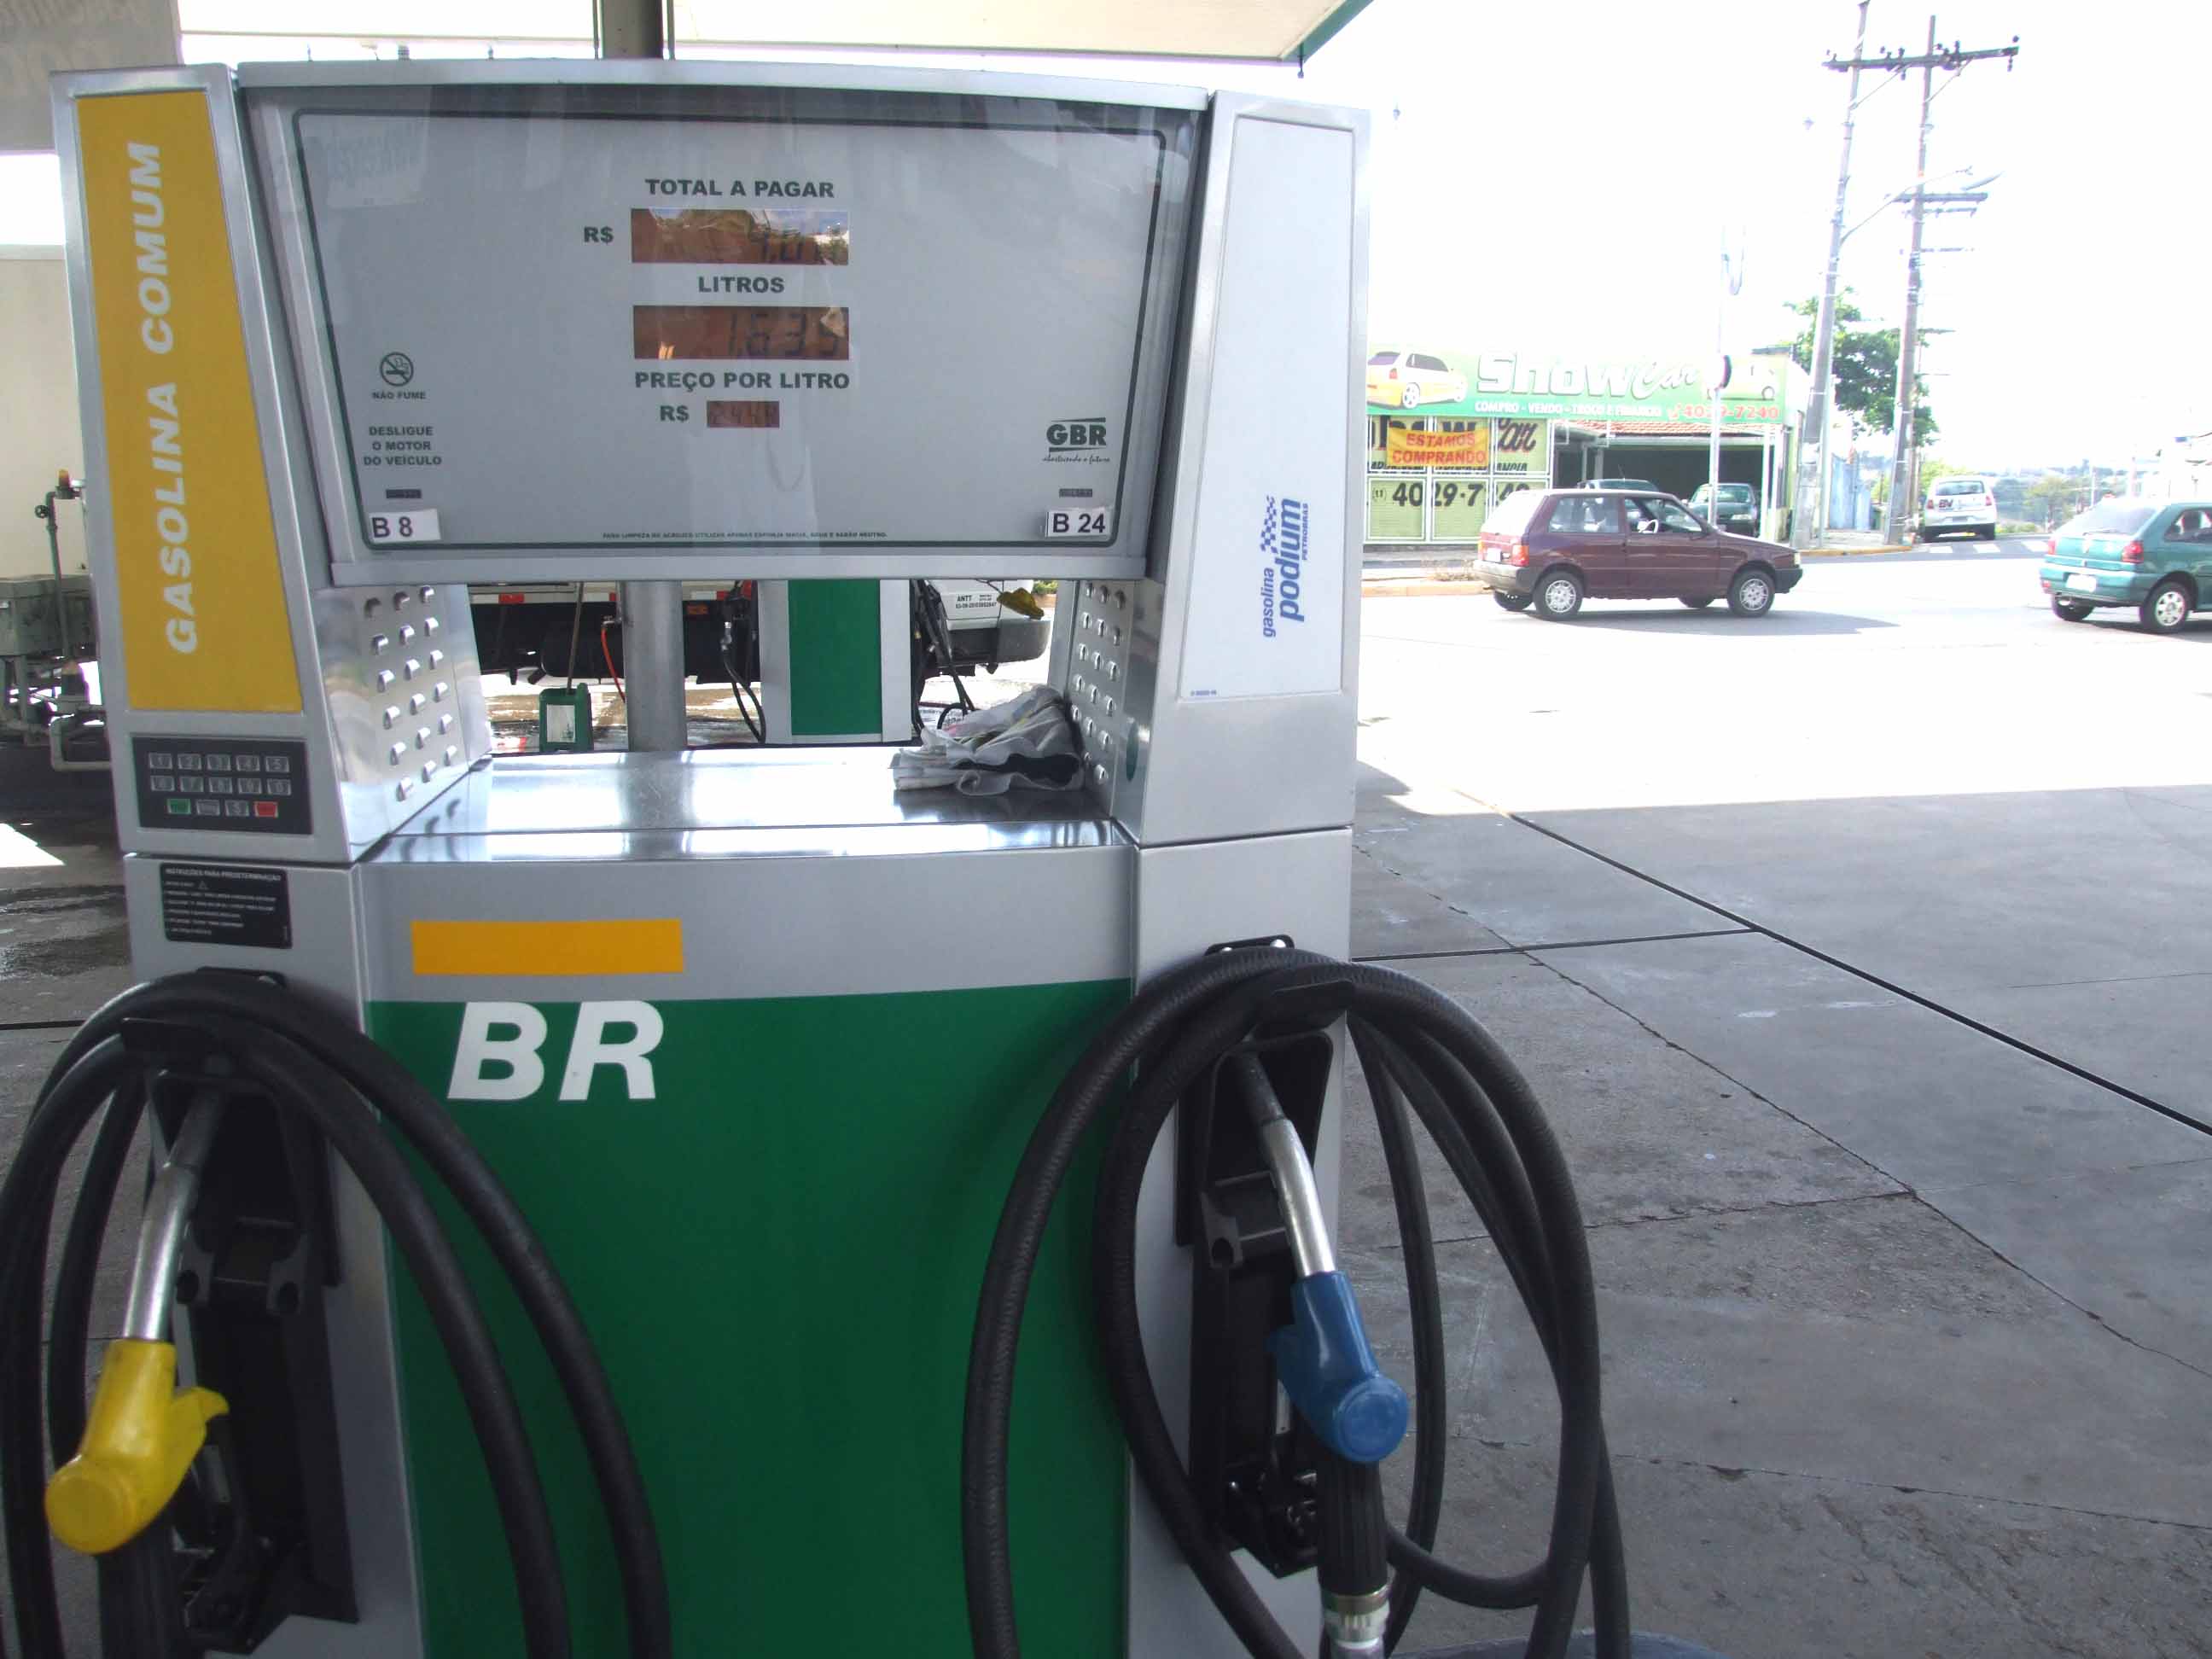 Atualmente, a gasolina comercializada no Brasil está até 30% mais cara que na média dos preços no exterior.